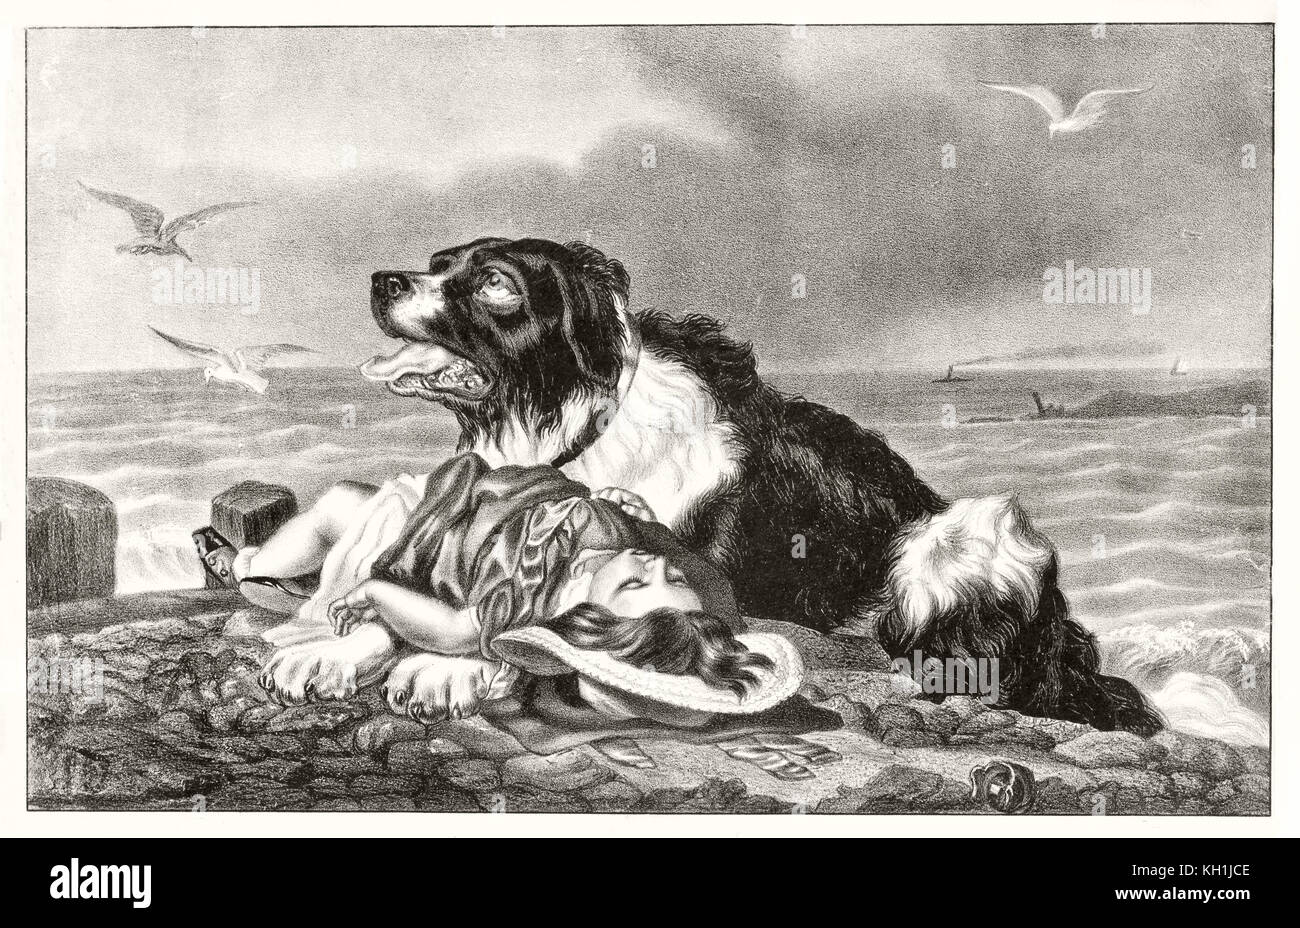 Vecchia illustrazione di un cane e bambino appena salvato. Da Currier & Ives, publ. in New York, ca. 1870 Foto Stock